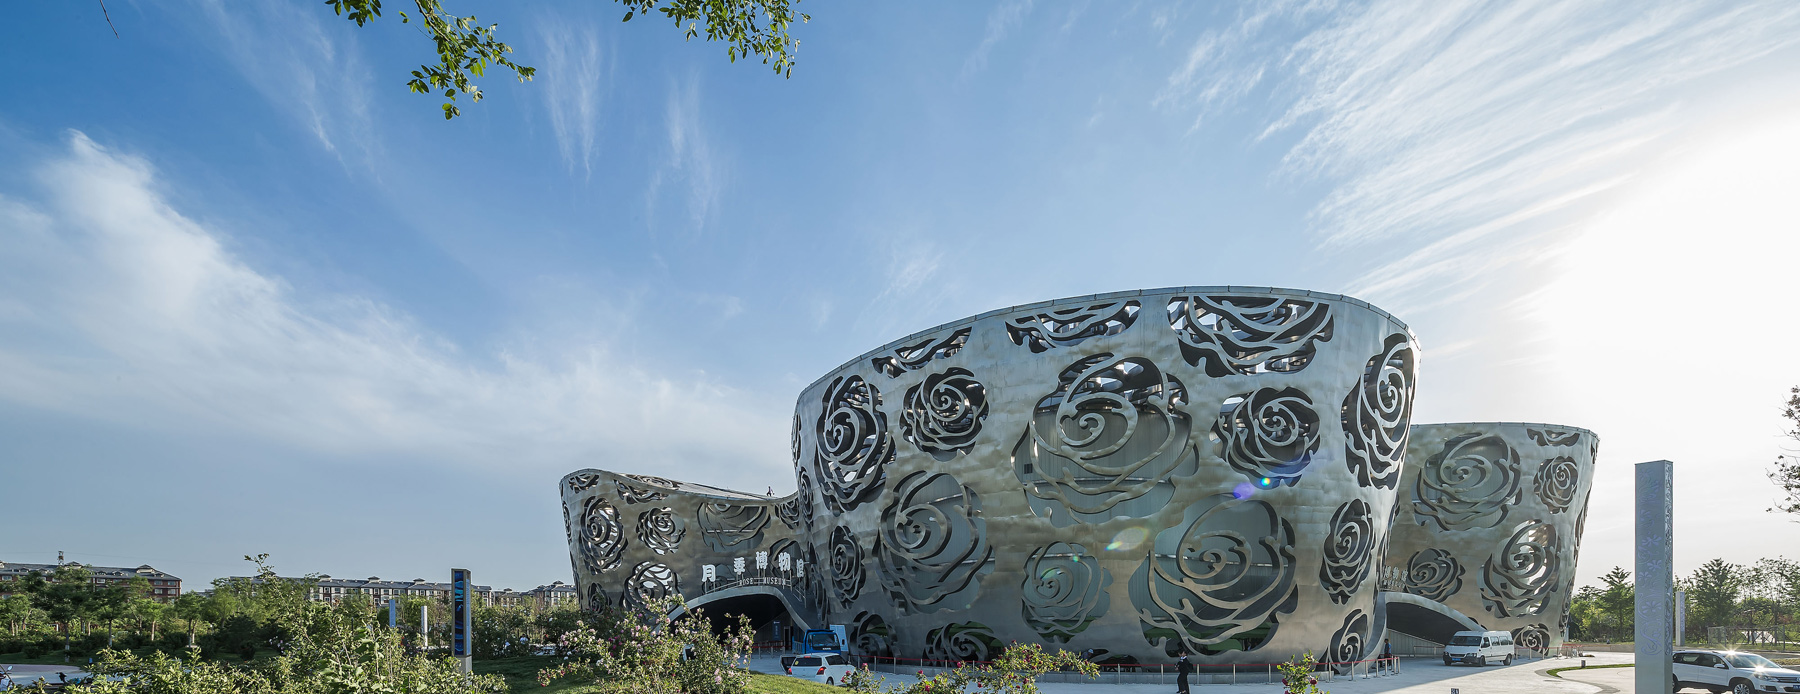 Το μουσείο στο Πεκίνο που είναι αφιερωμένο στα τριαντάφυλλα!